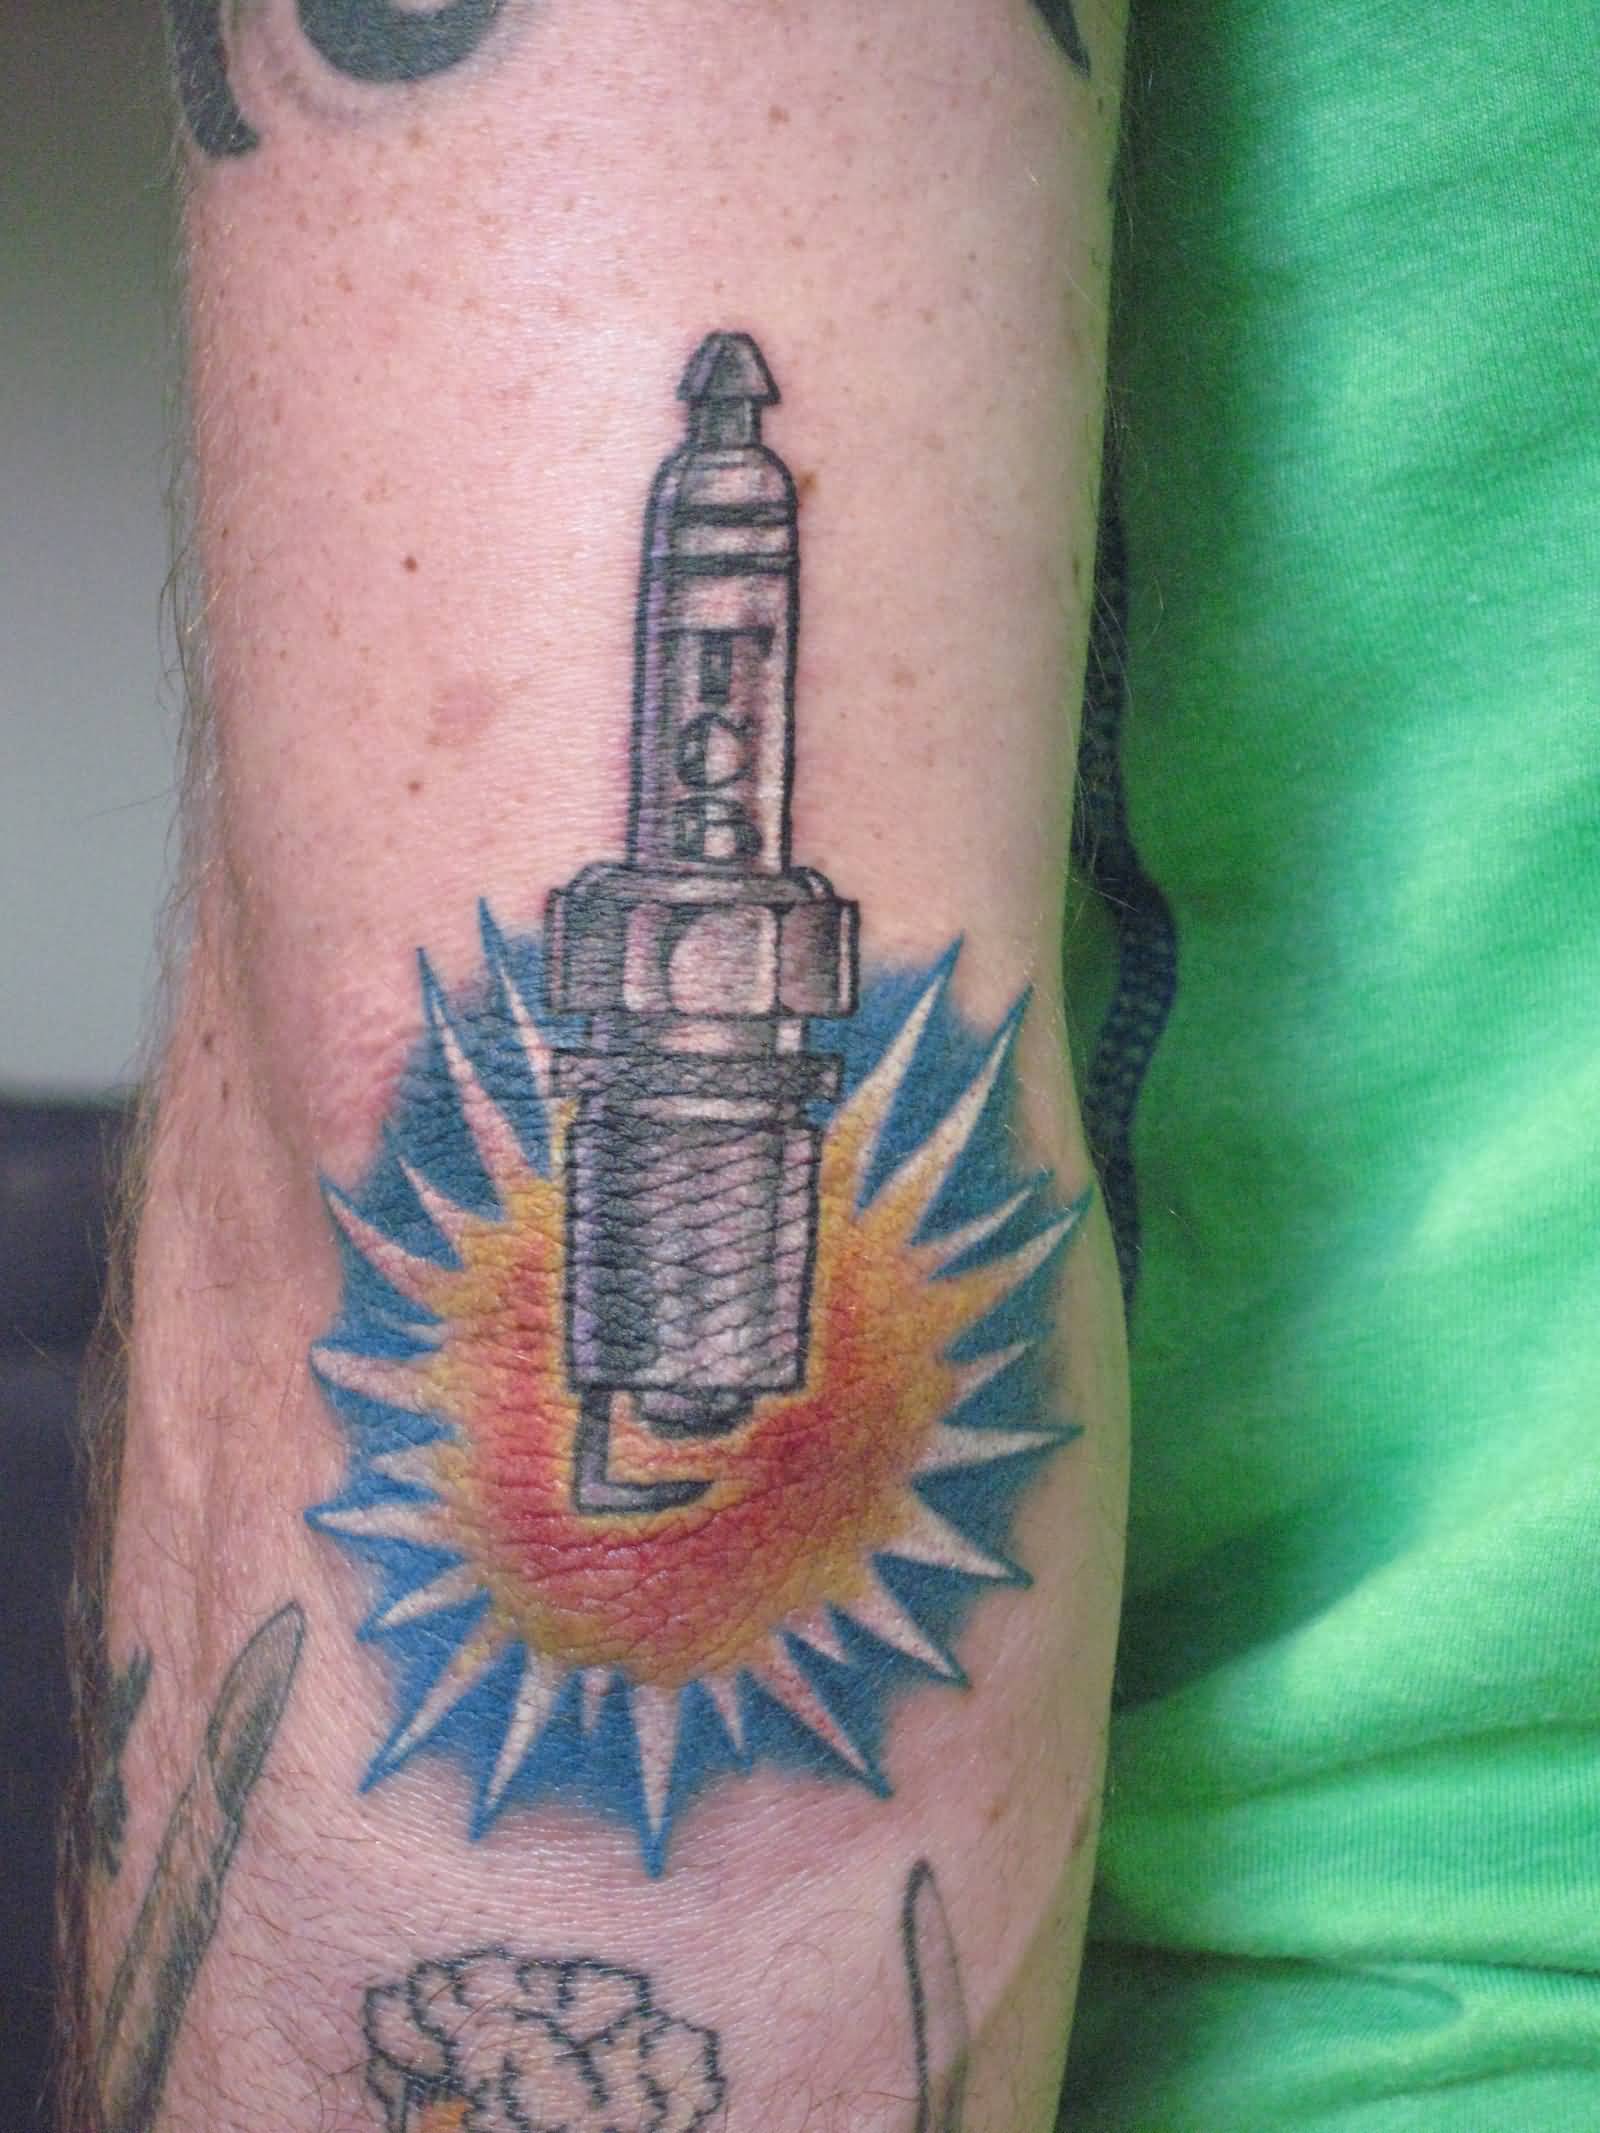 Color Spark Plug Tattoo On Arm Sleeve